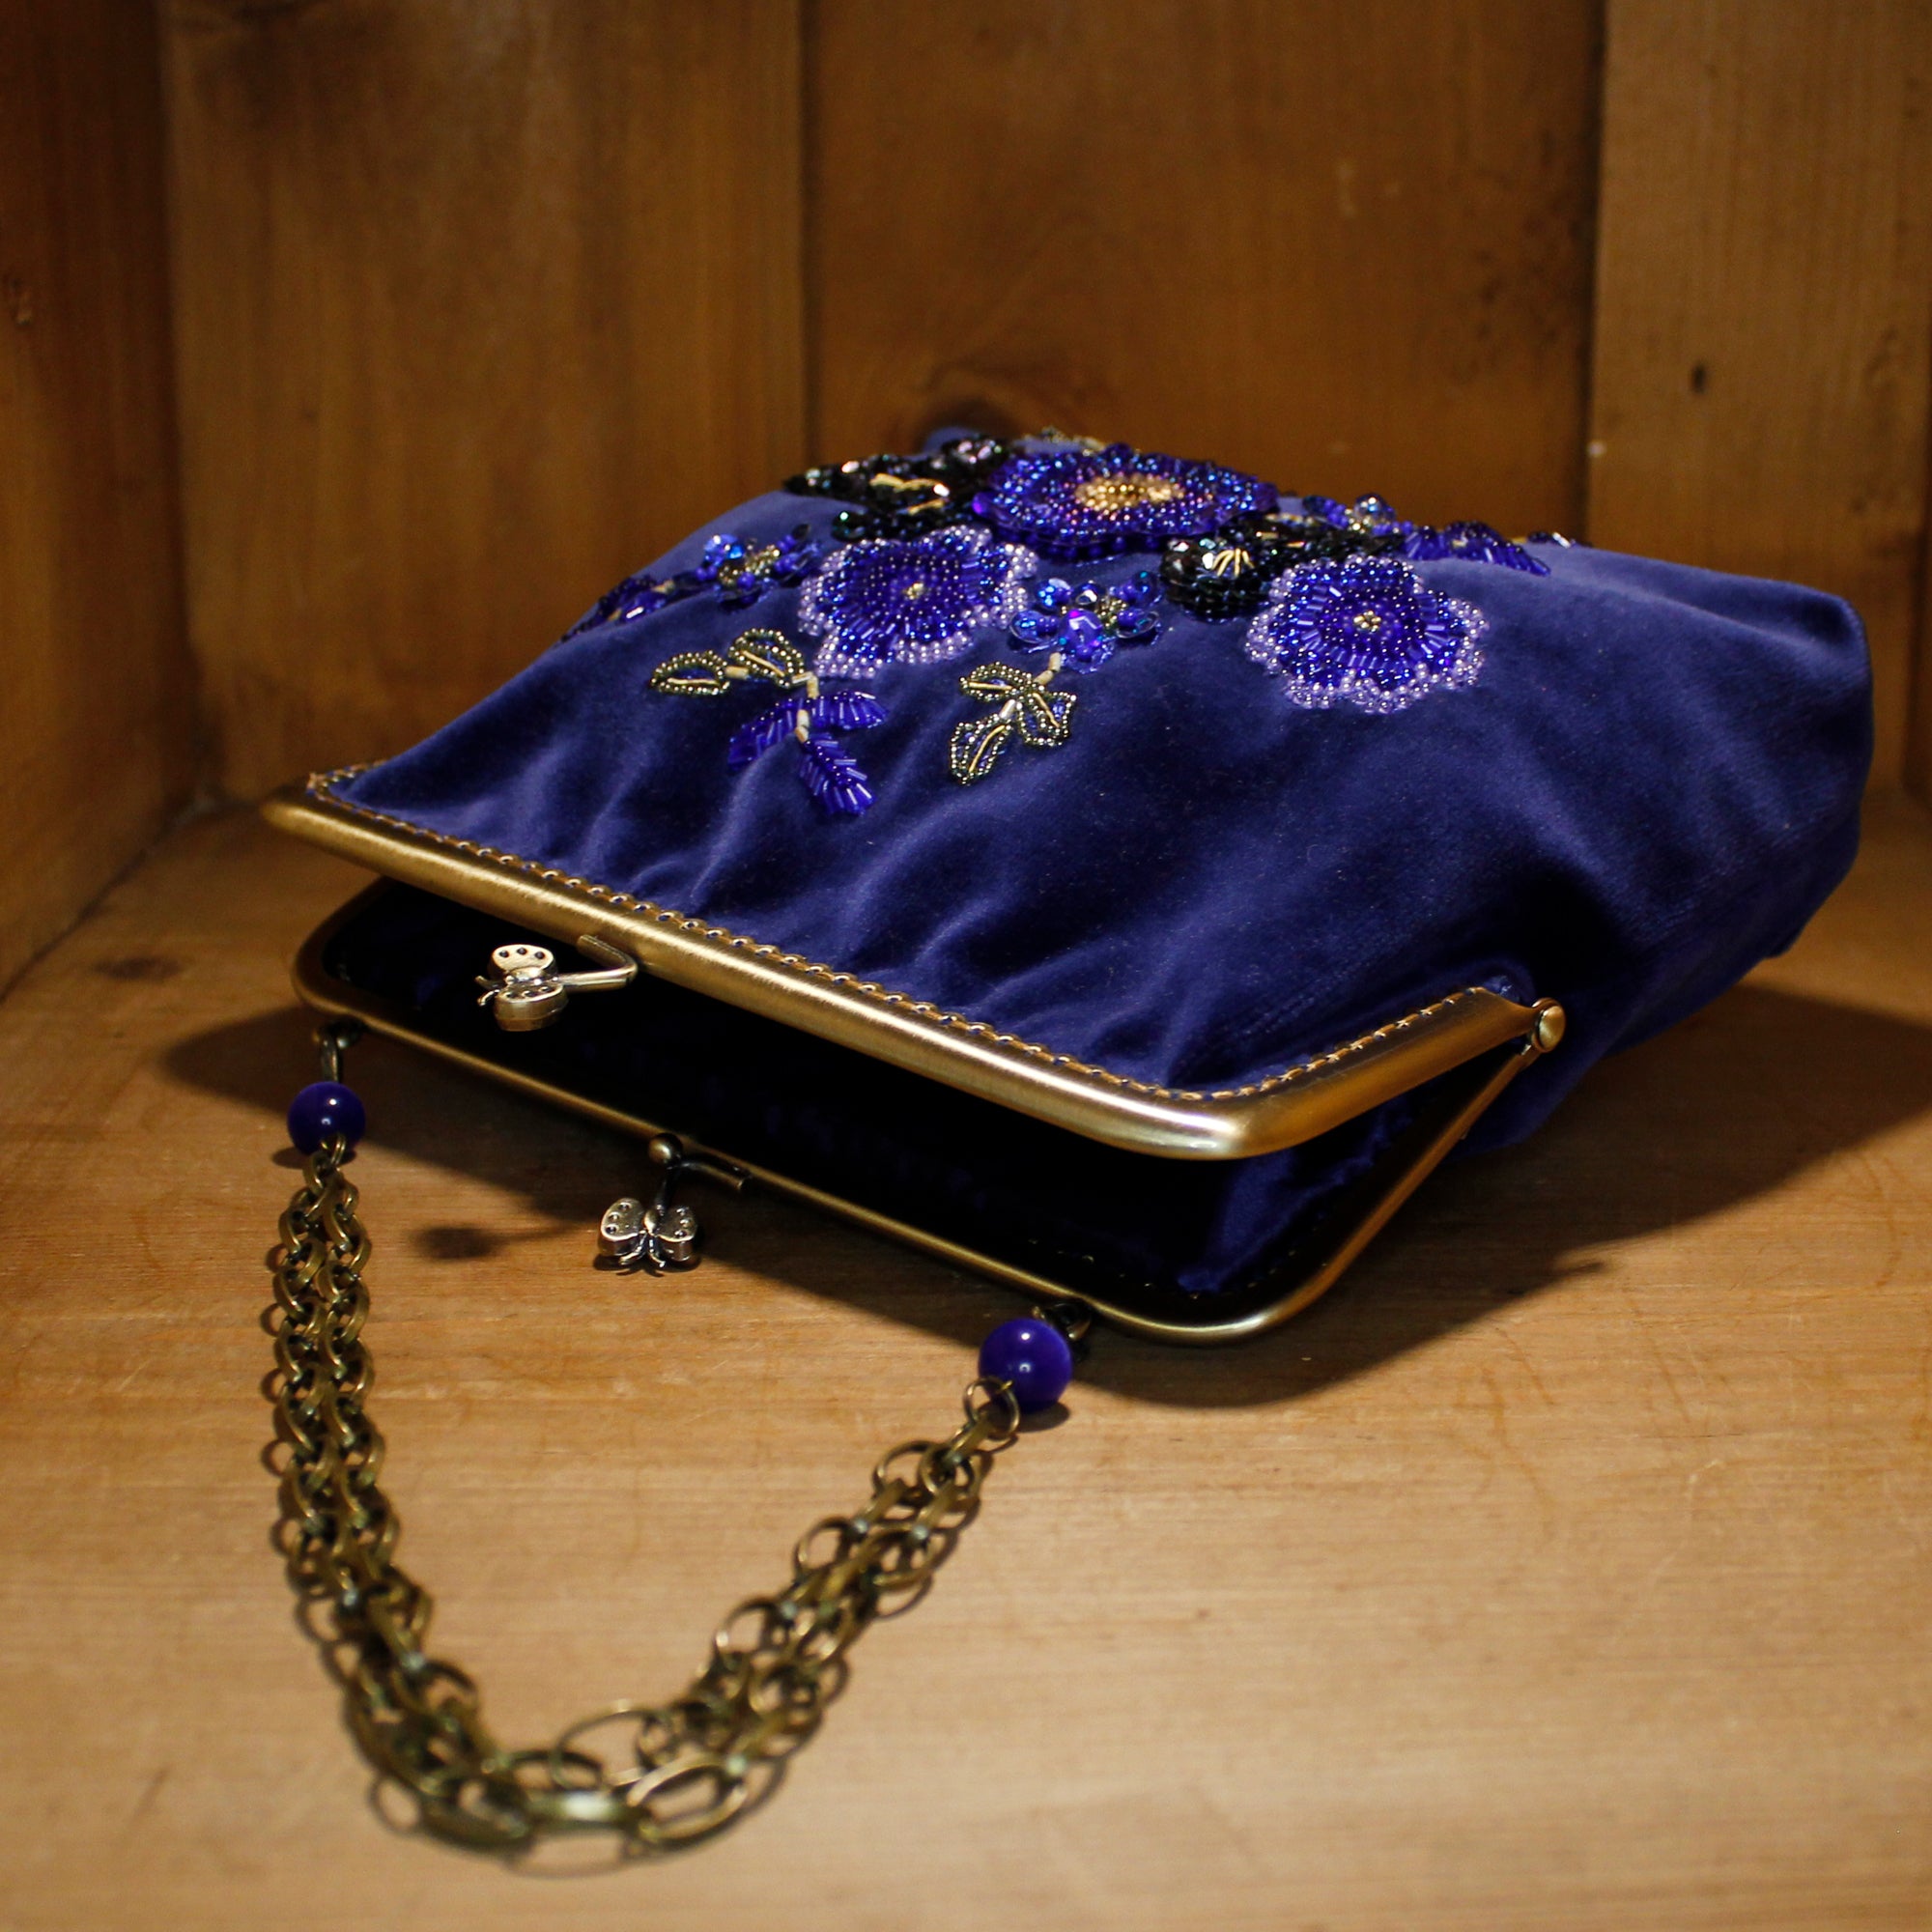 Art Nouveau Style Evening Bag - Blue